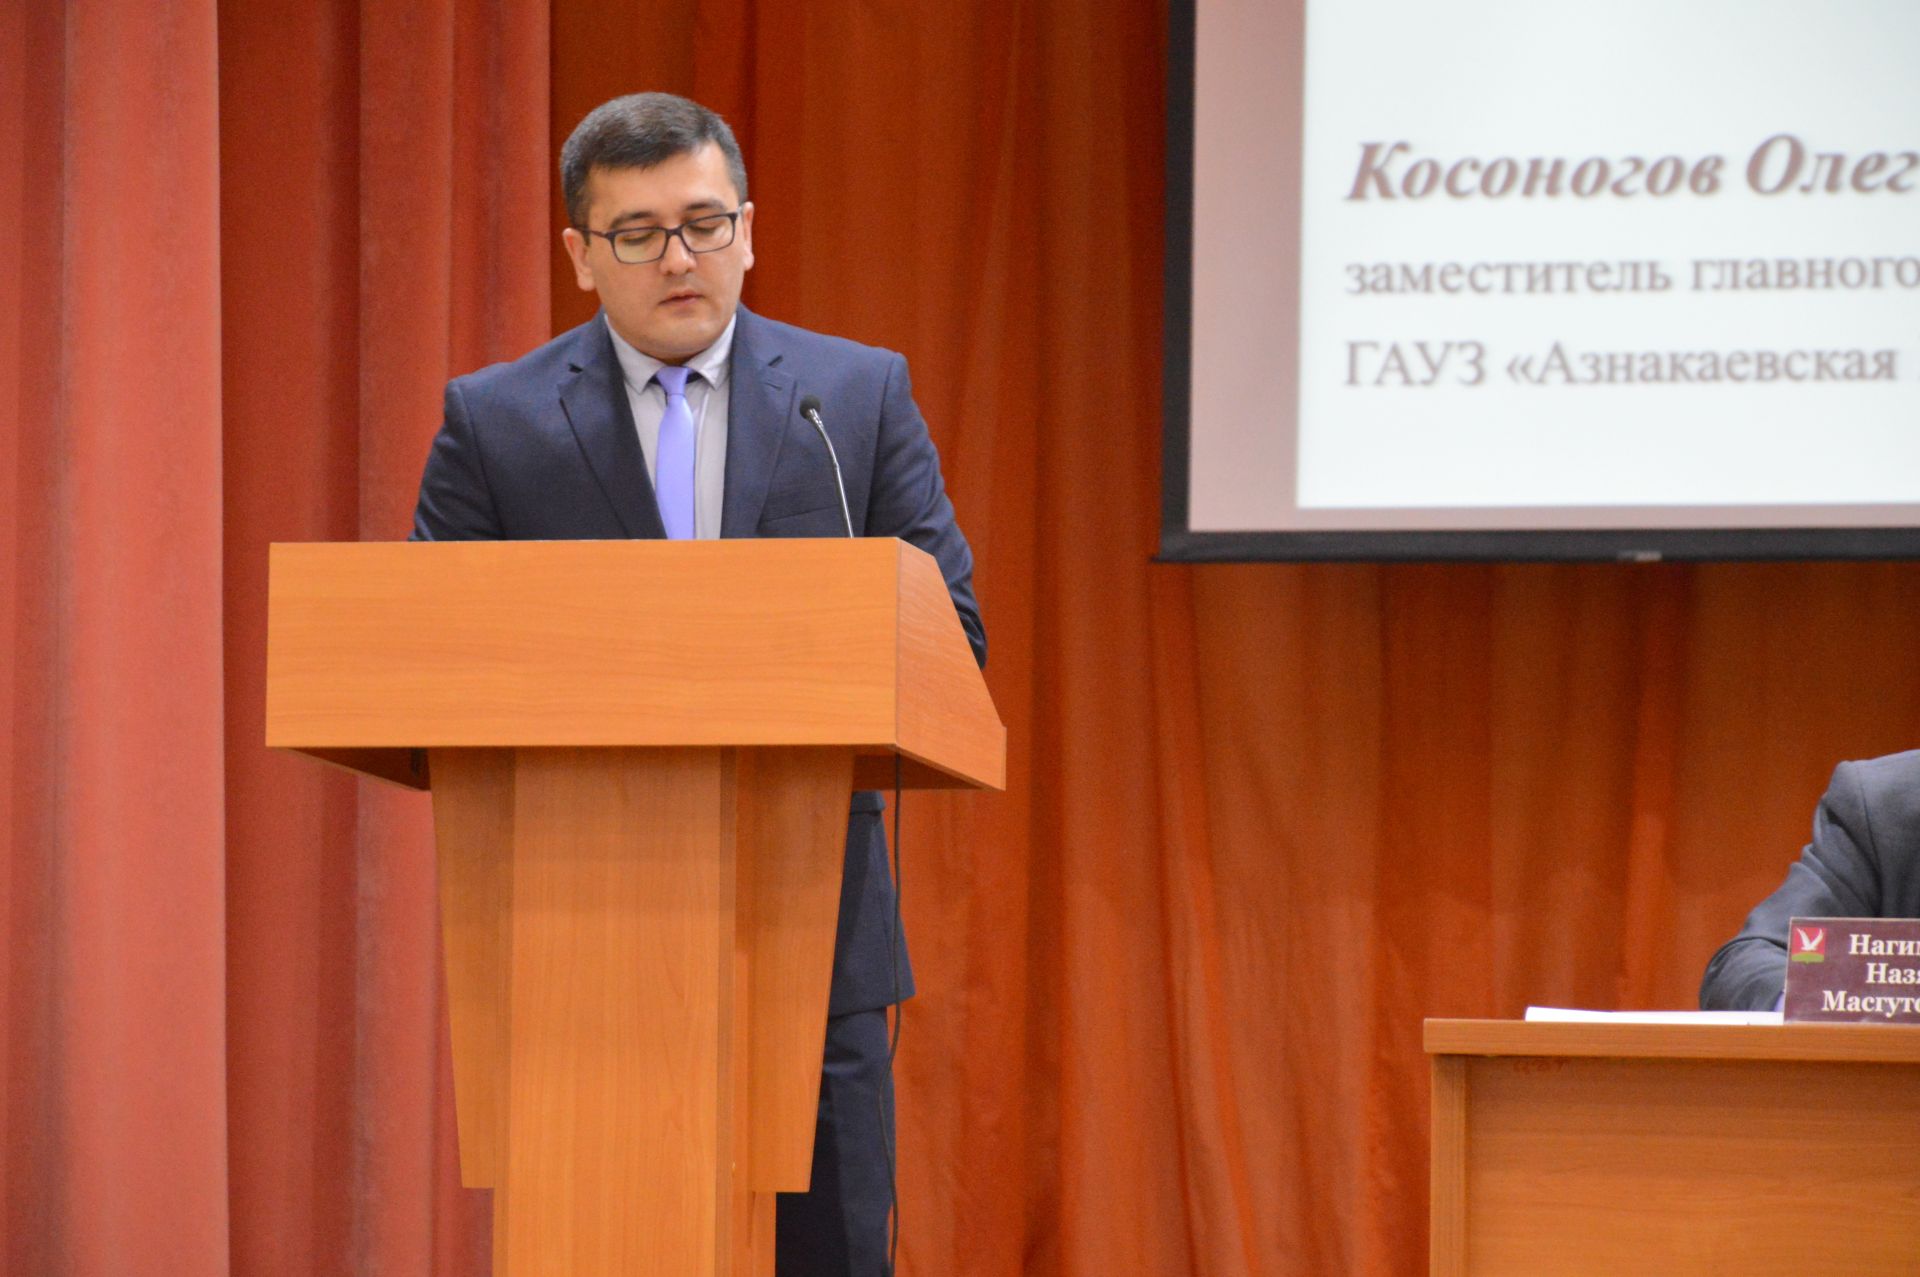 Еженедельное совещание с участием руководителей предприятий, организаций и учреждений Азнакаевского муниципального района